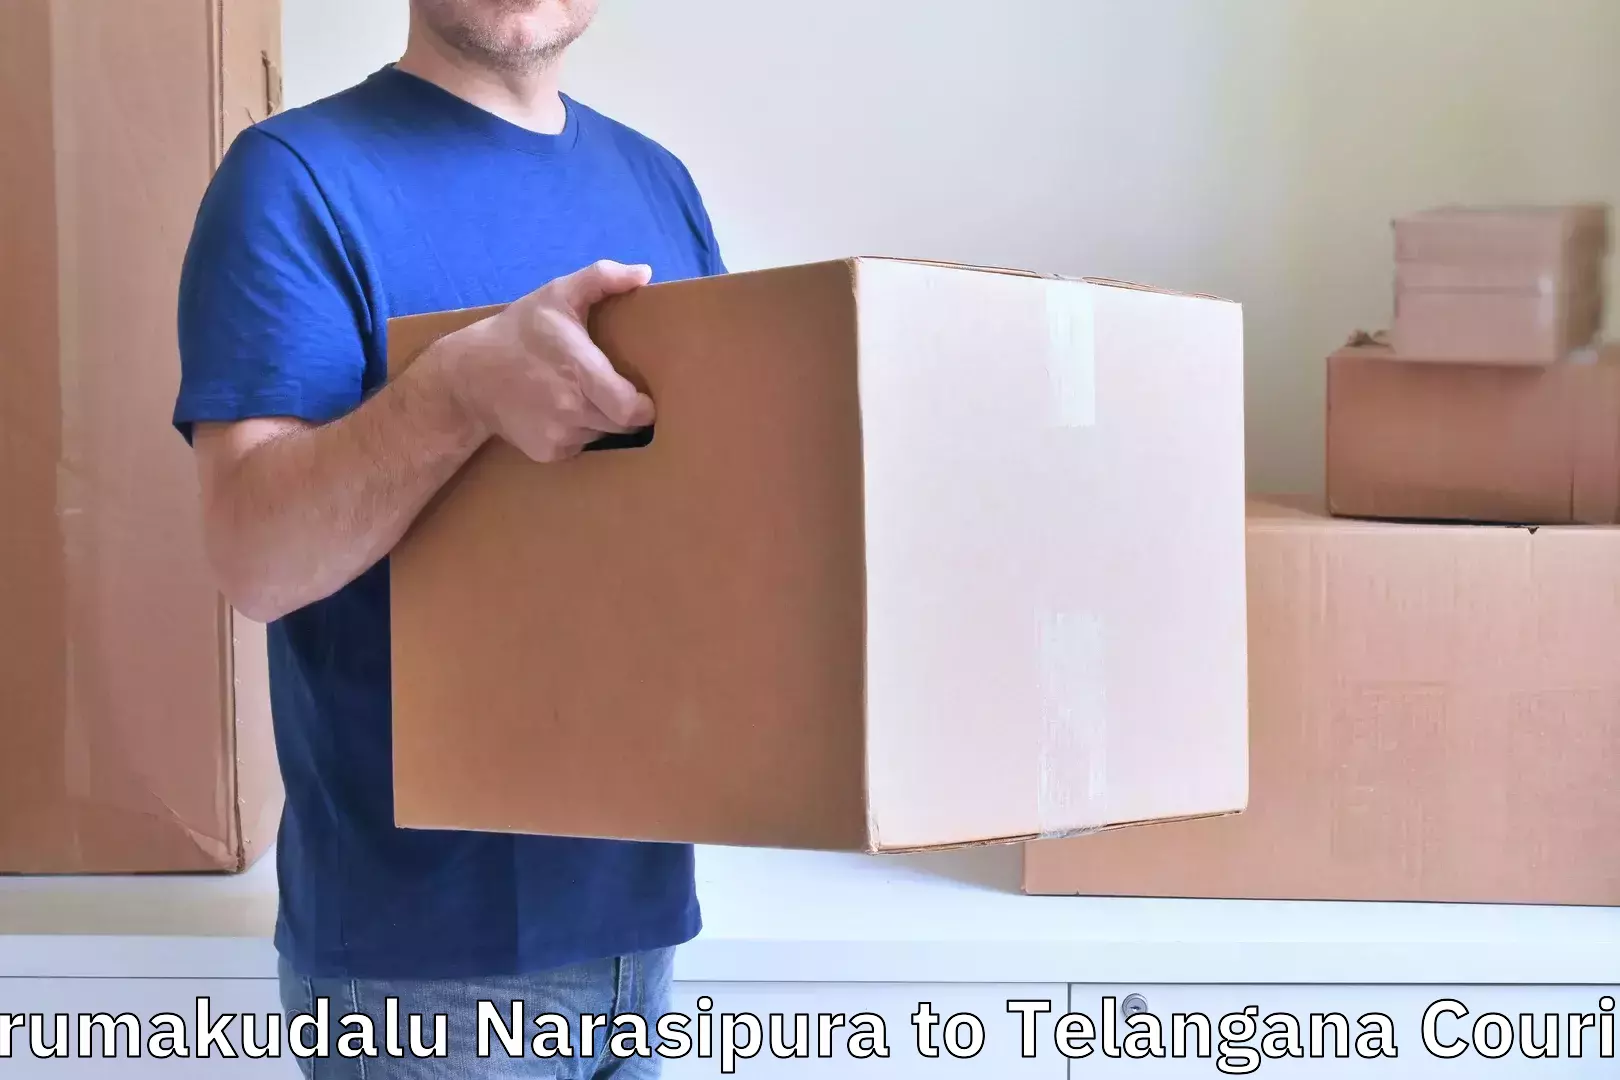 Luggage delivery estimate Tirumakudalu Narasipura to Nizamabad